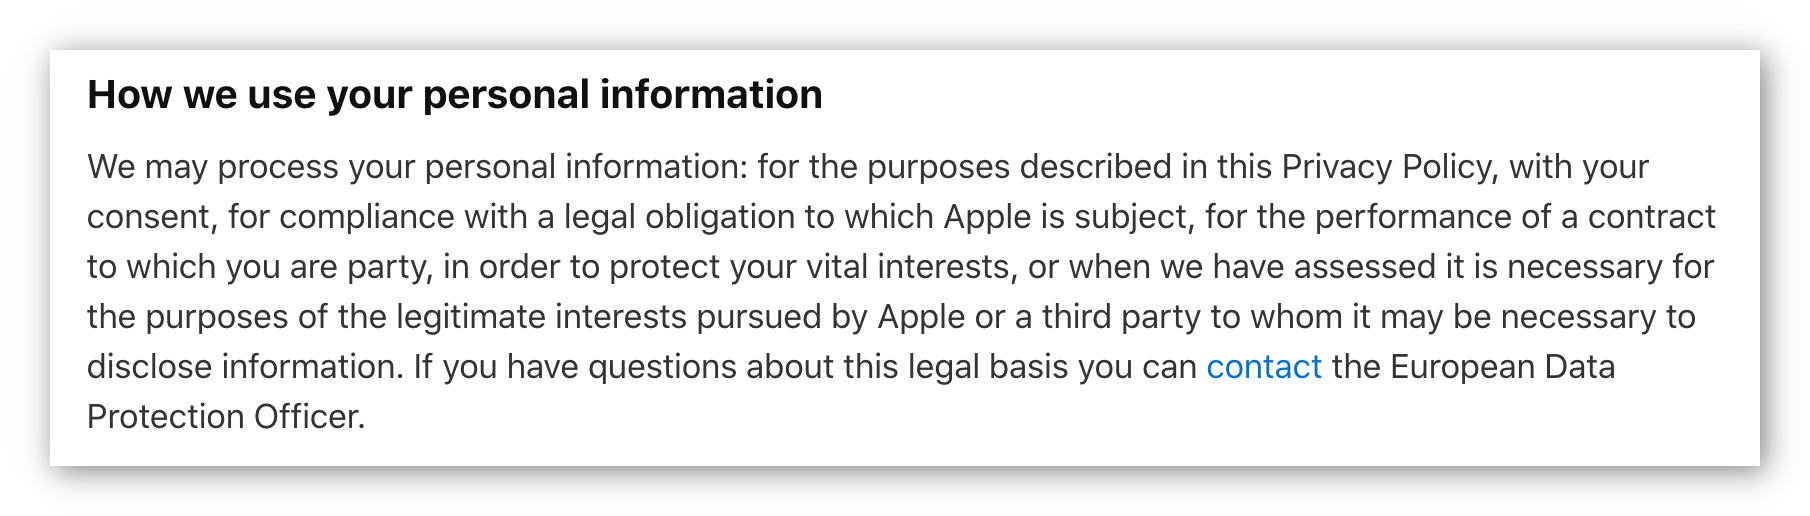 Skærmbillede af Apples privatlivspolitik